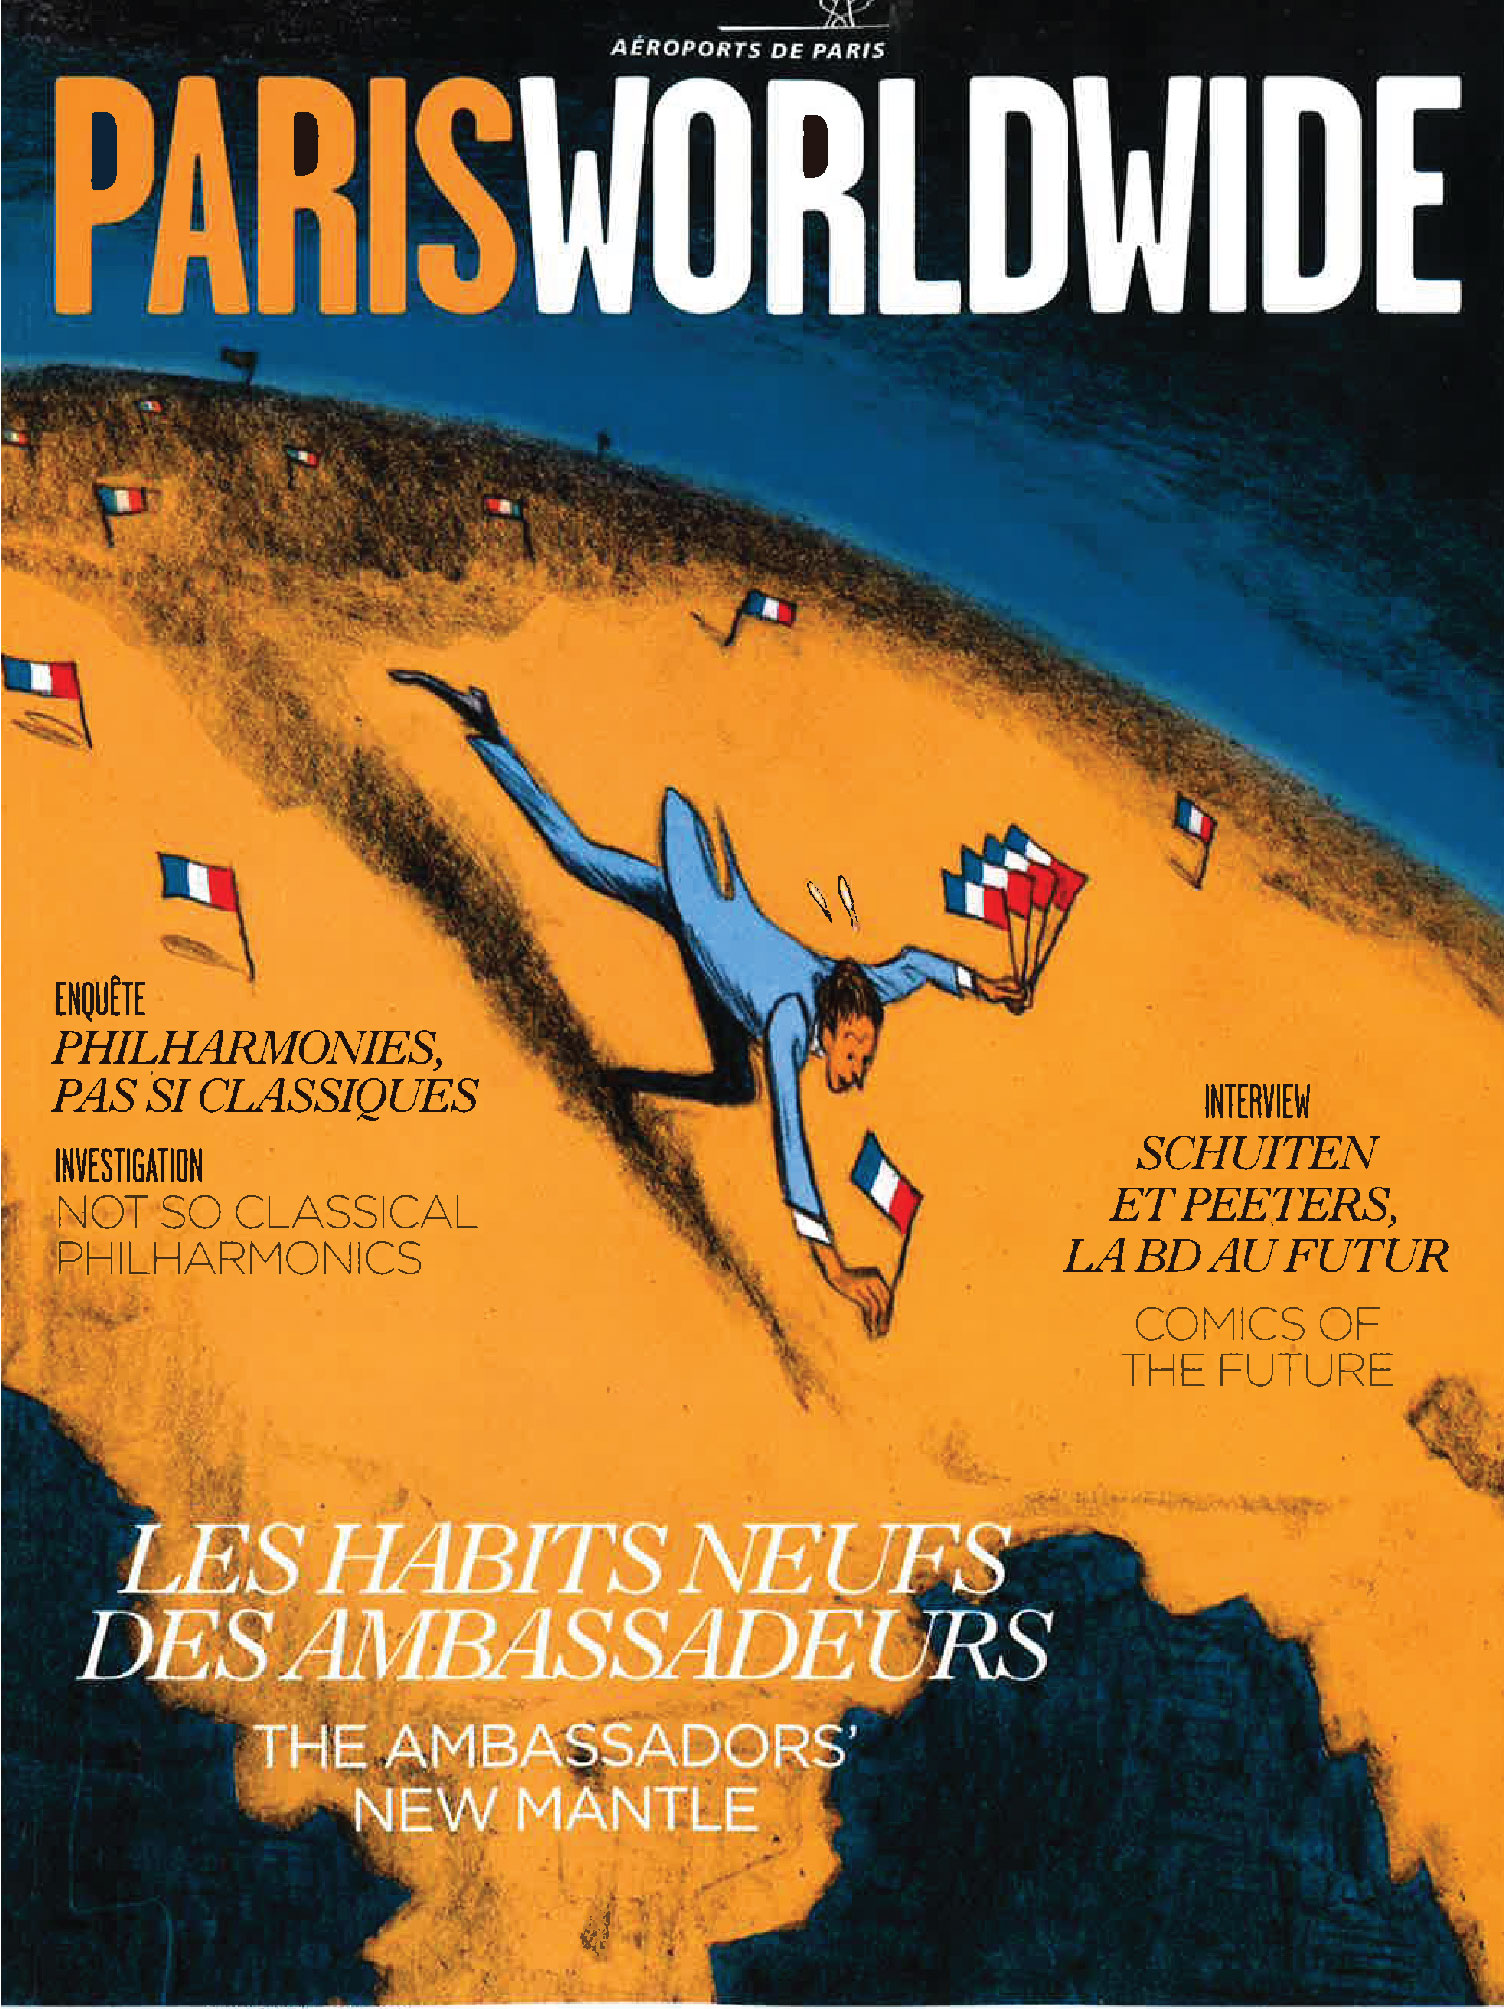 couverture magazine aeroports de paris fevrier 2015